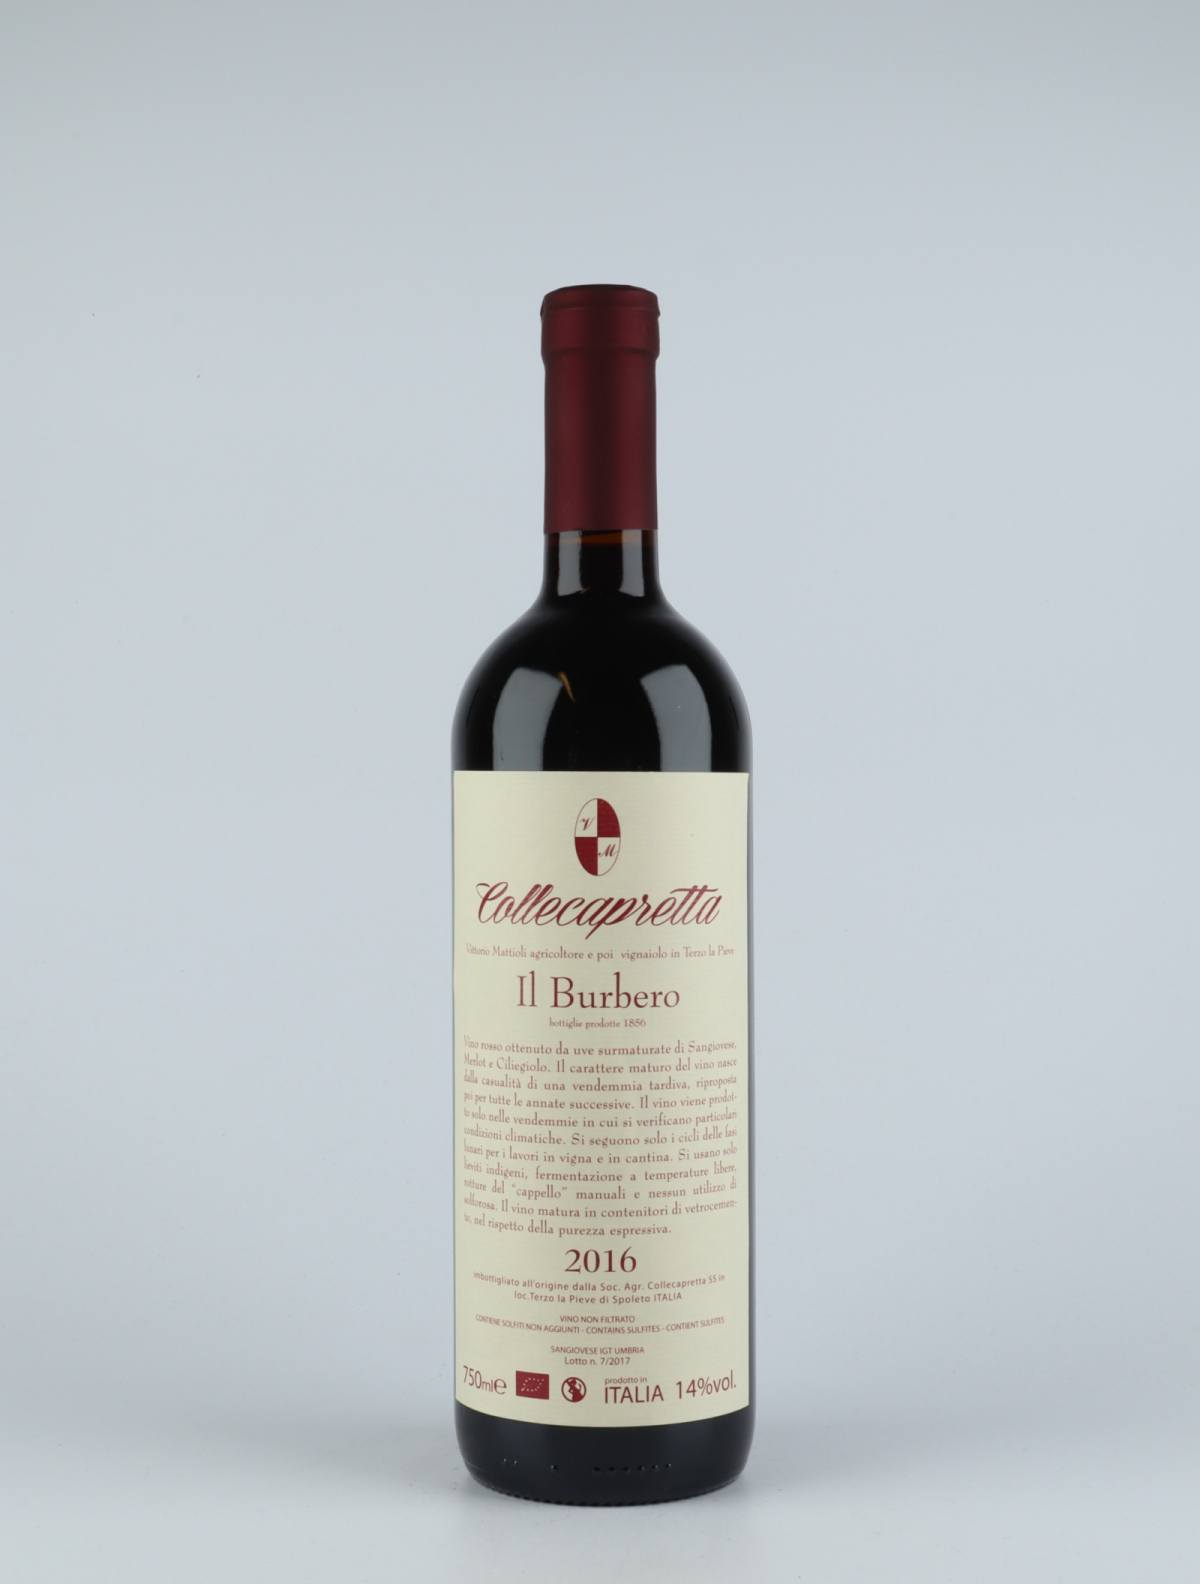 A bottle 2016 Il Burbero Red wine from Collecapretta, Umbria in Italy